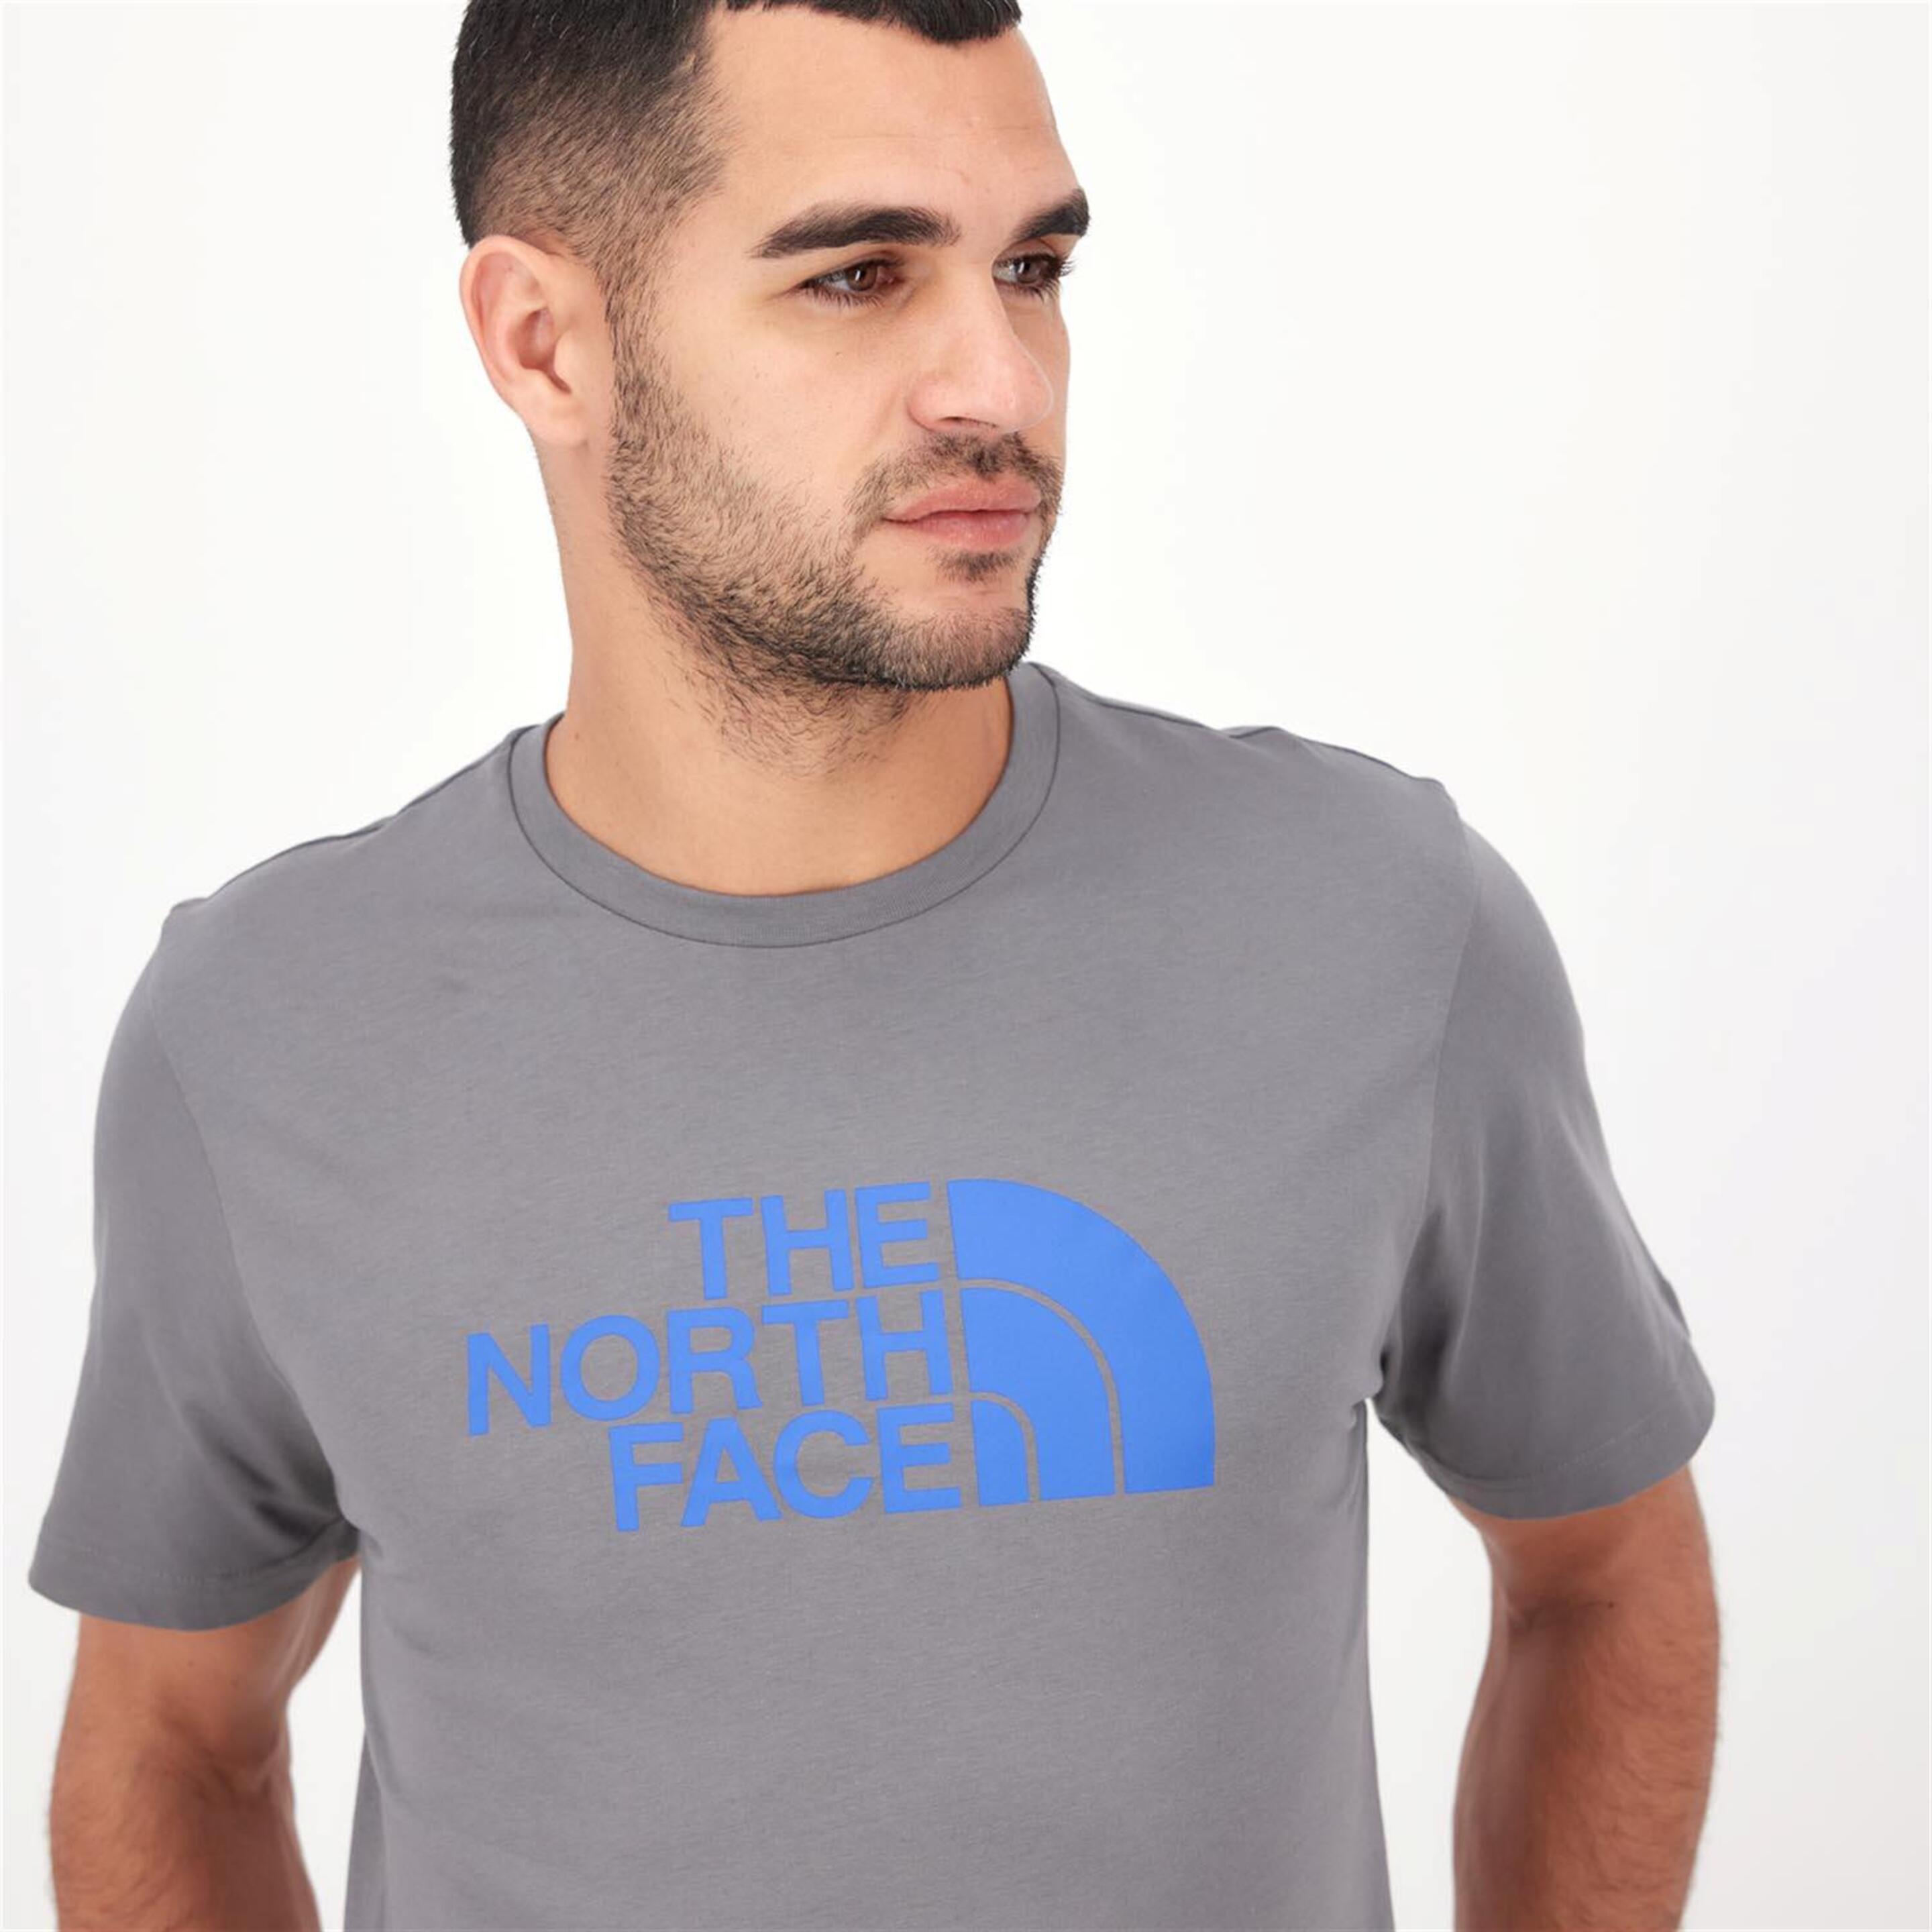 The North Face Easy - Gris - Camiseta Montaña Hombre